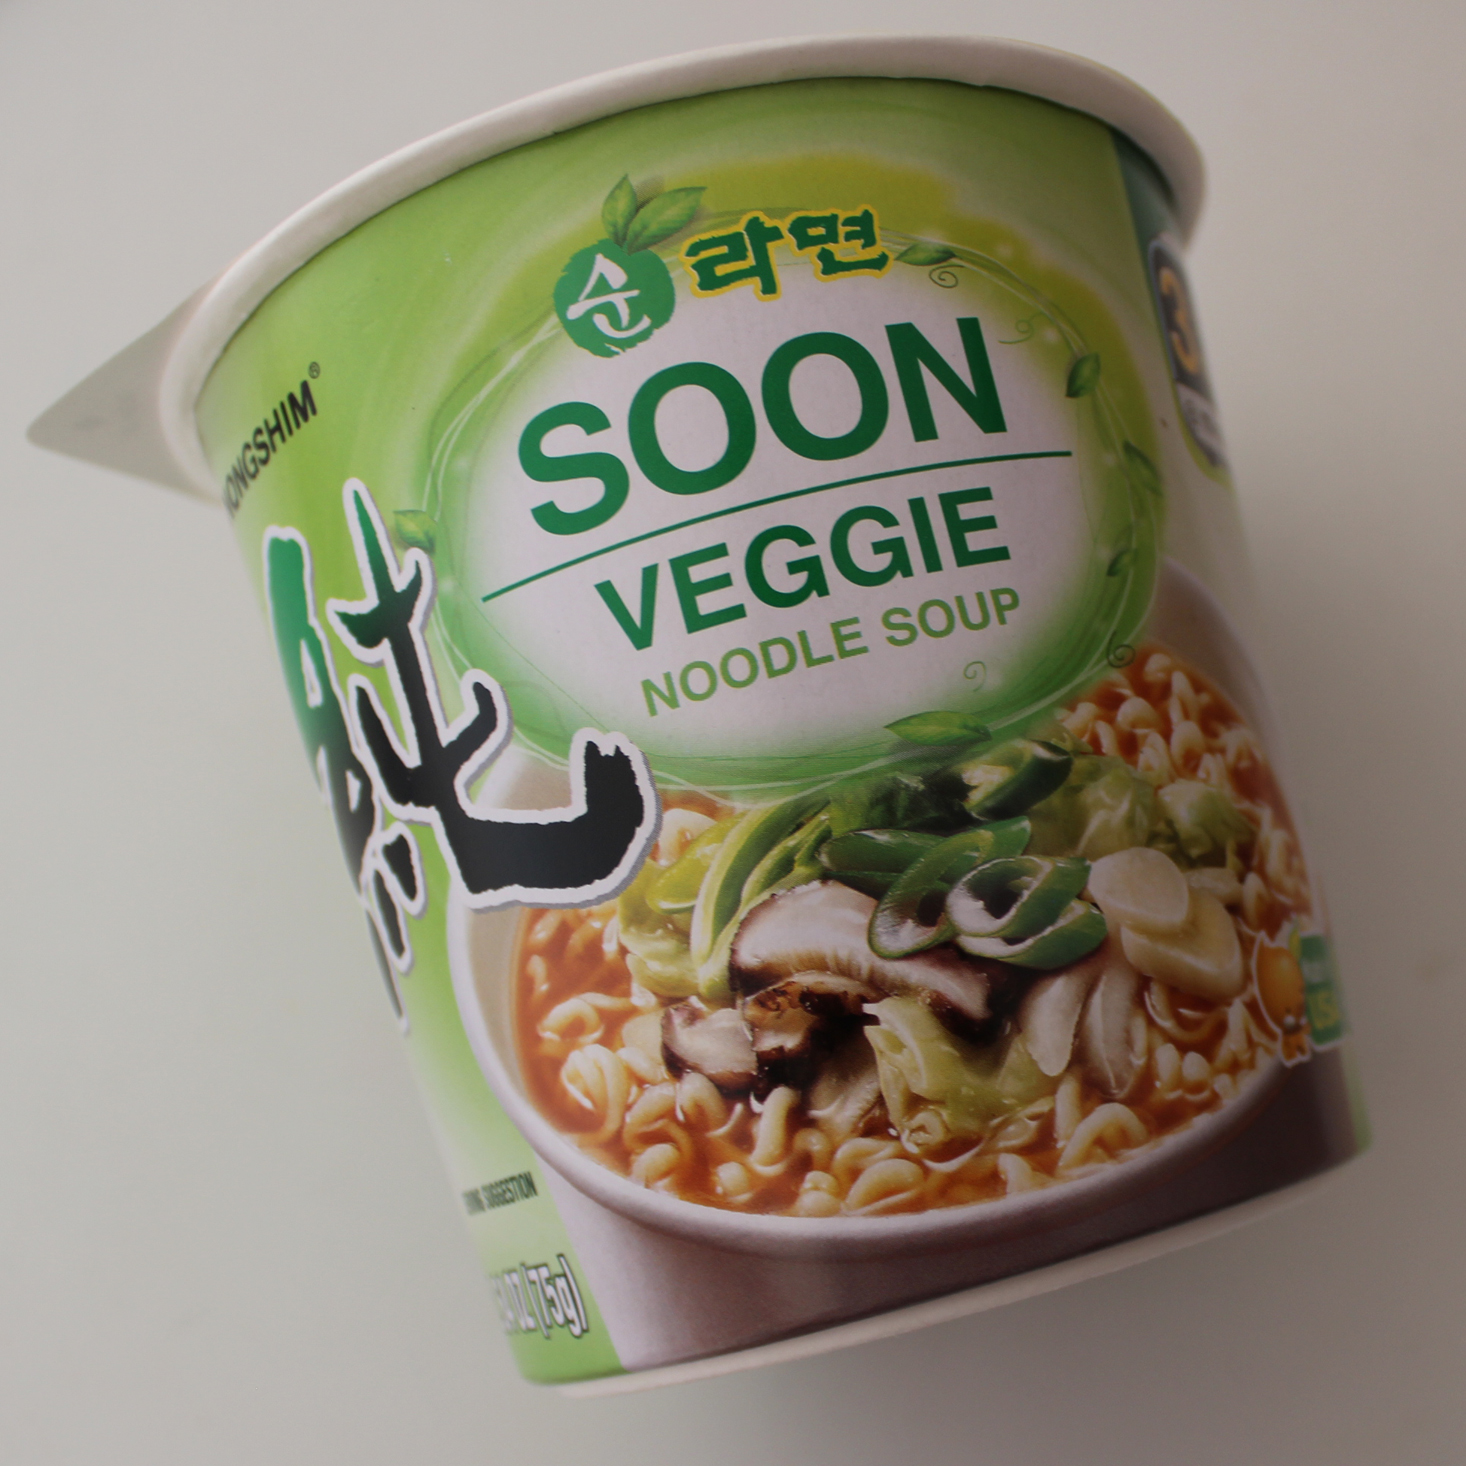 Vegan Cuts Snack September 2019 Noodles